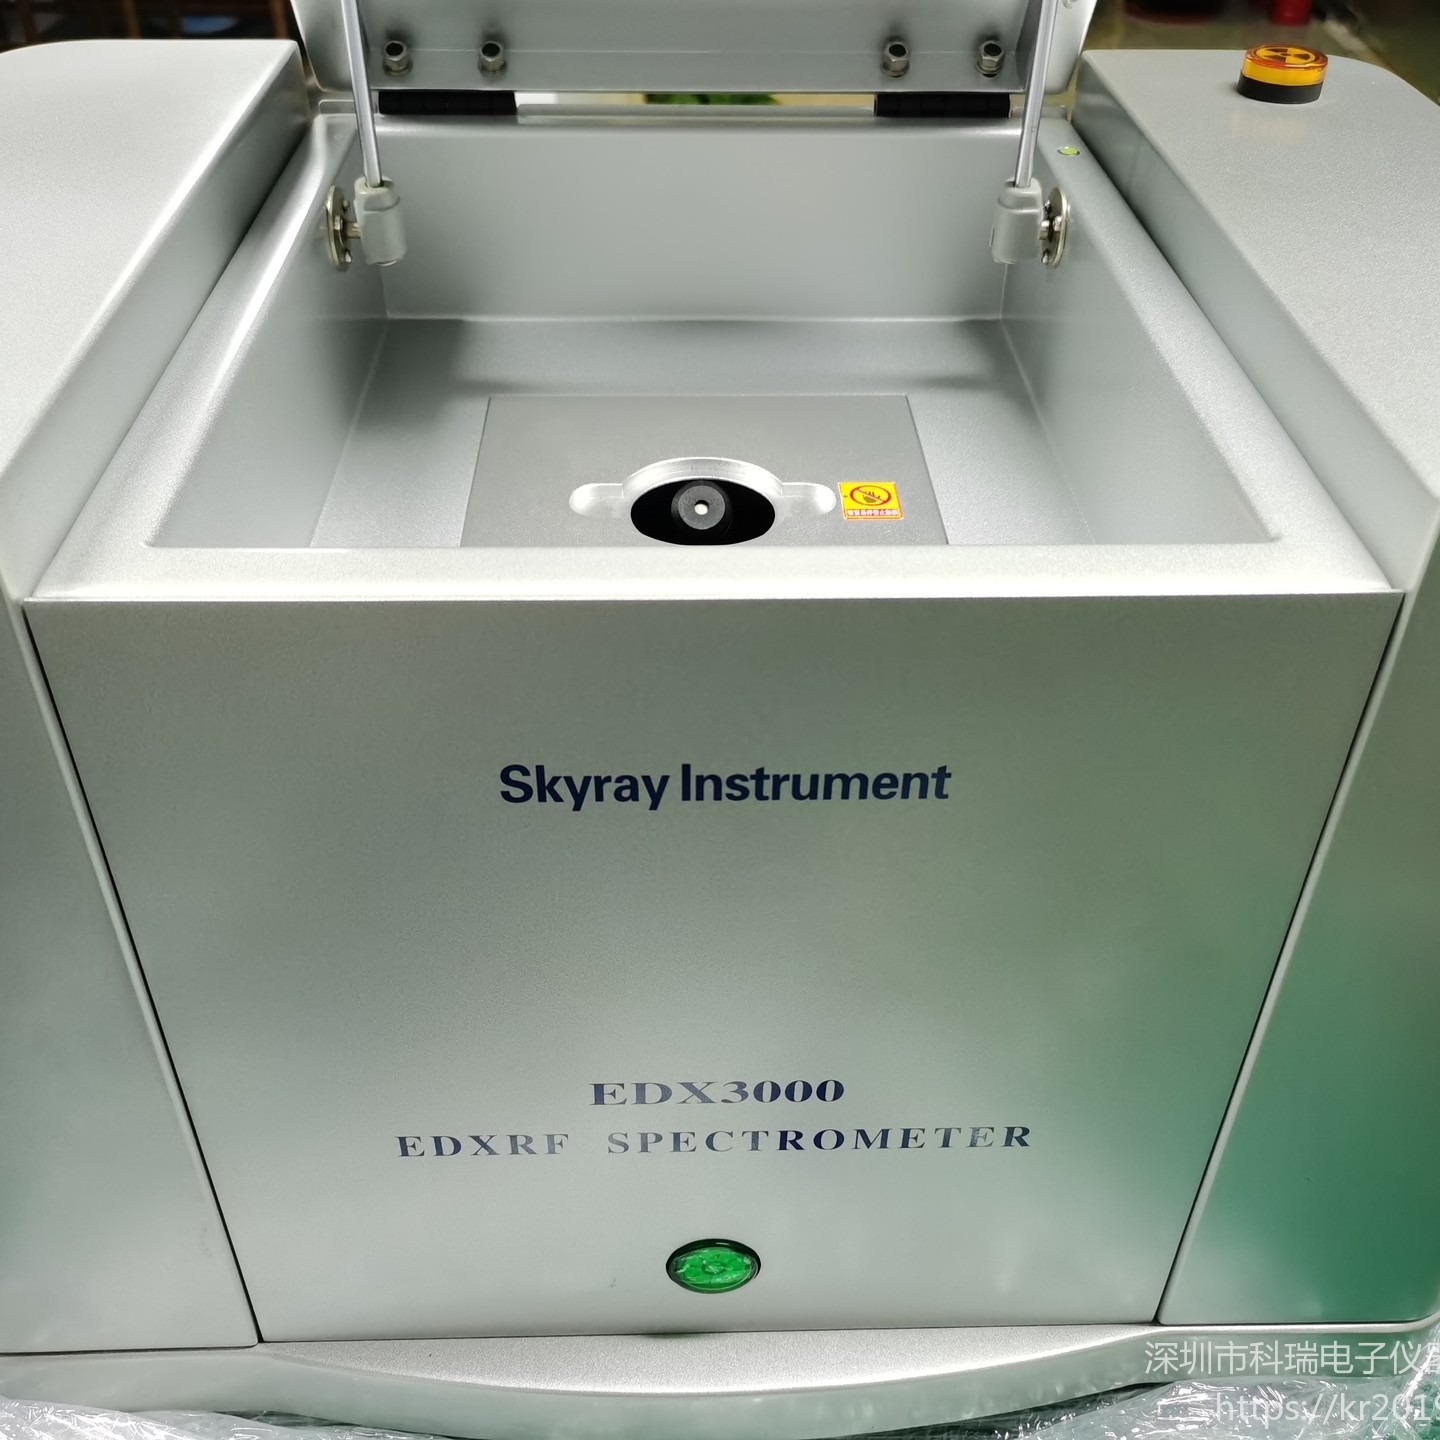 出售/回收 天瑞Skyray Instrument FT-IR 6600  傅立叶变换红外光谱仪 低价出售